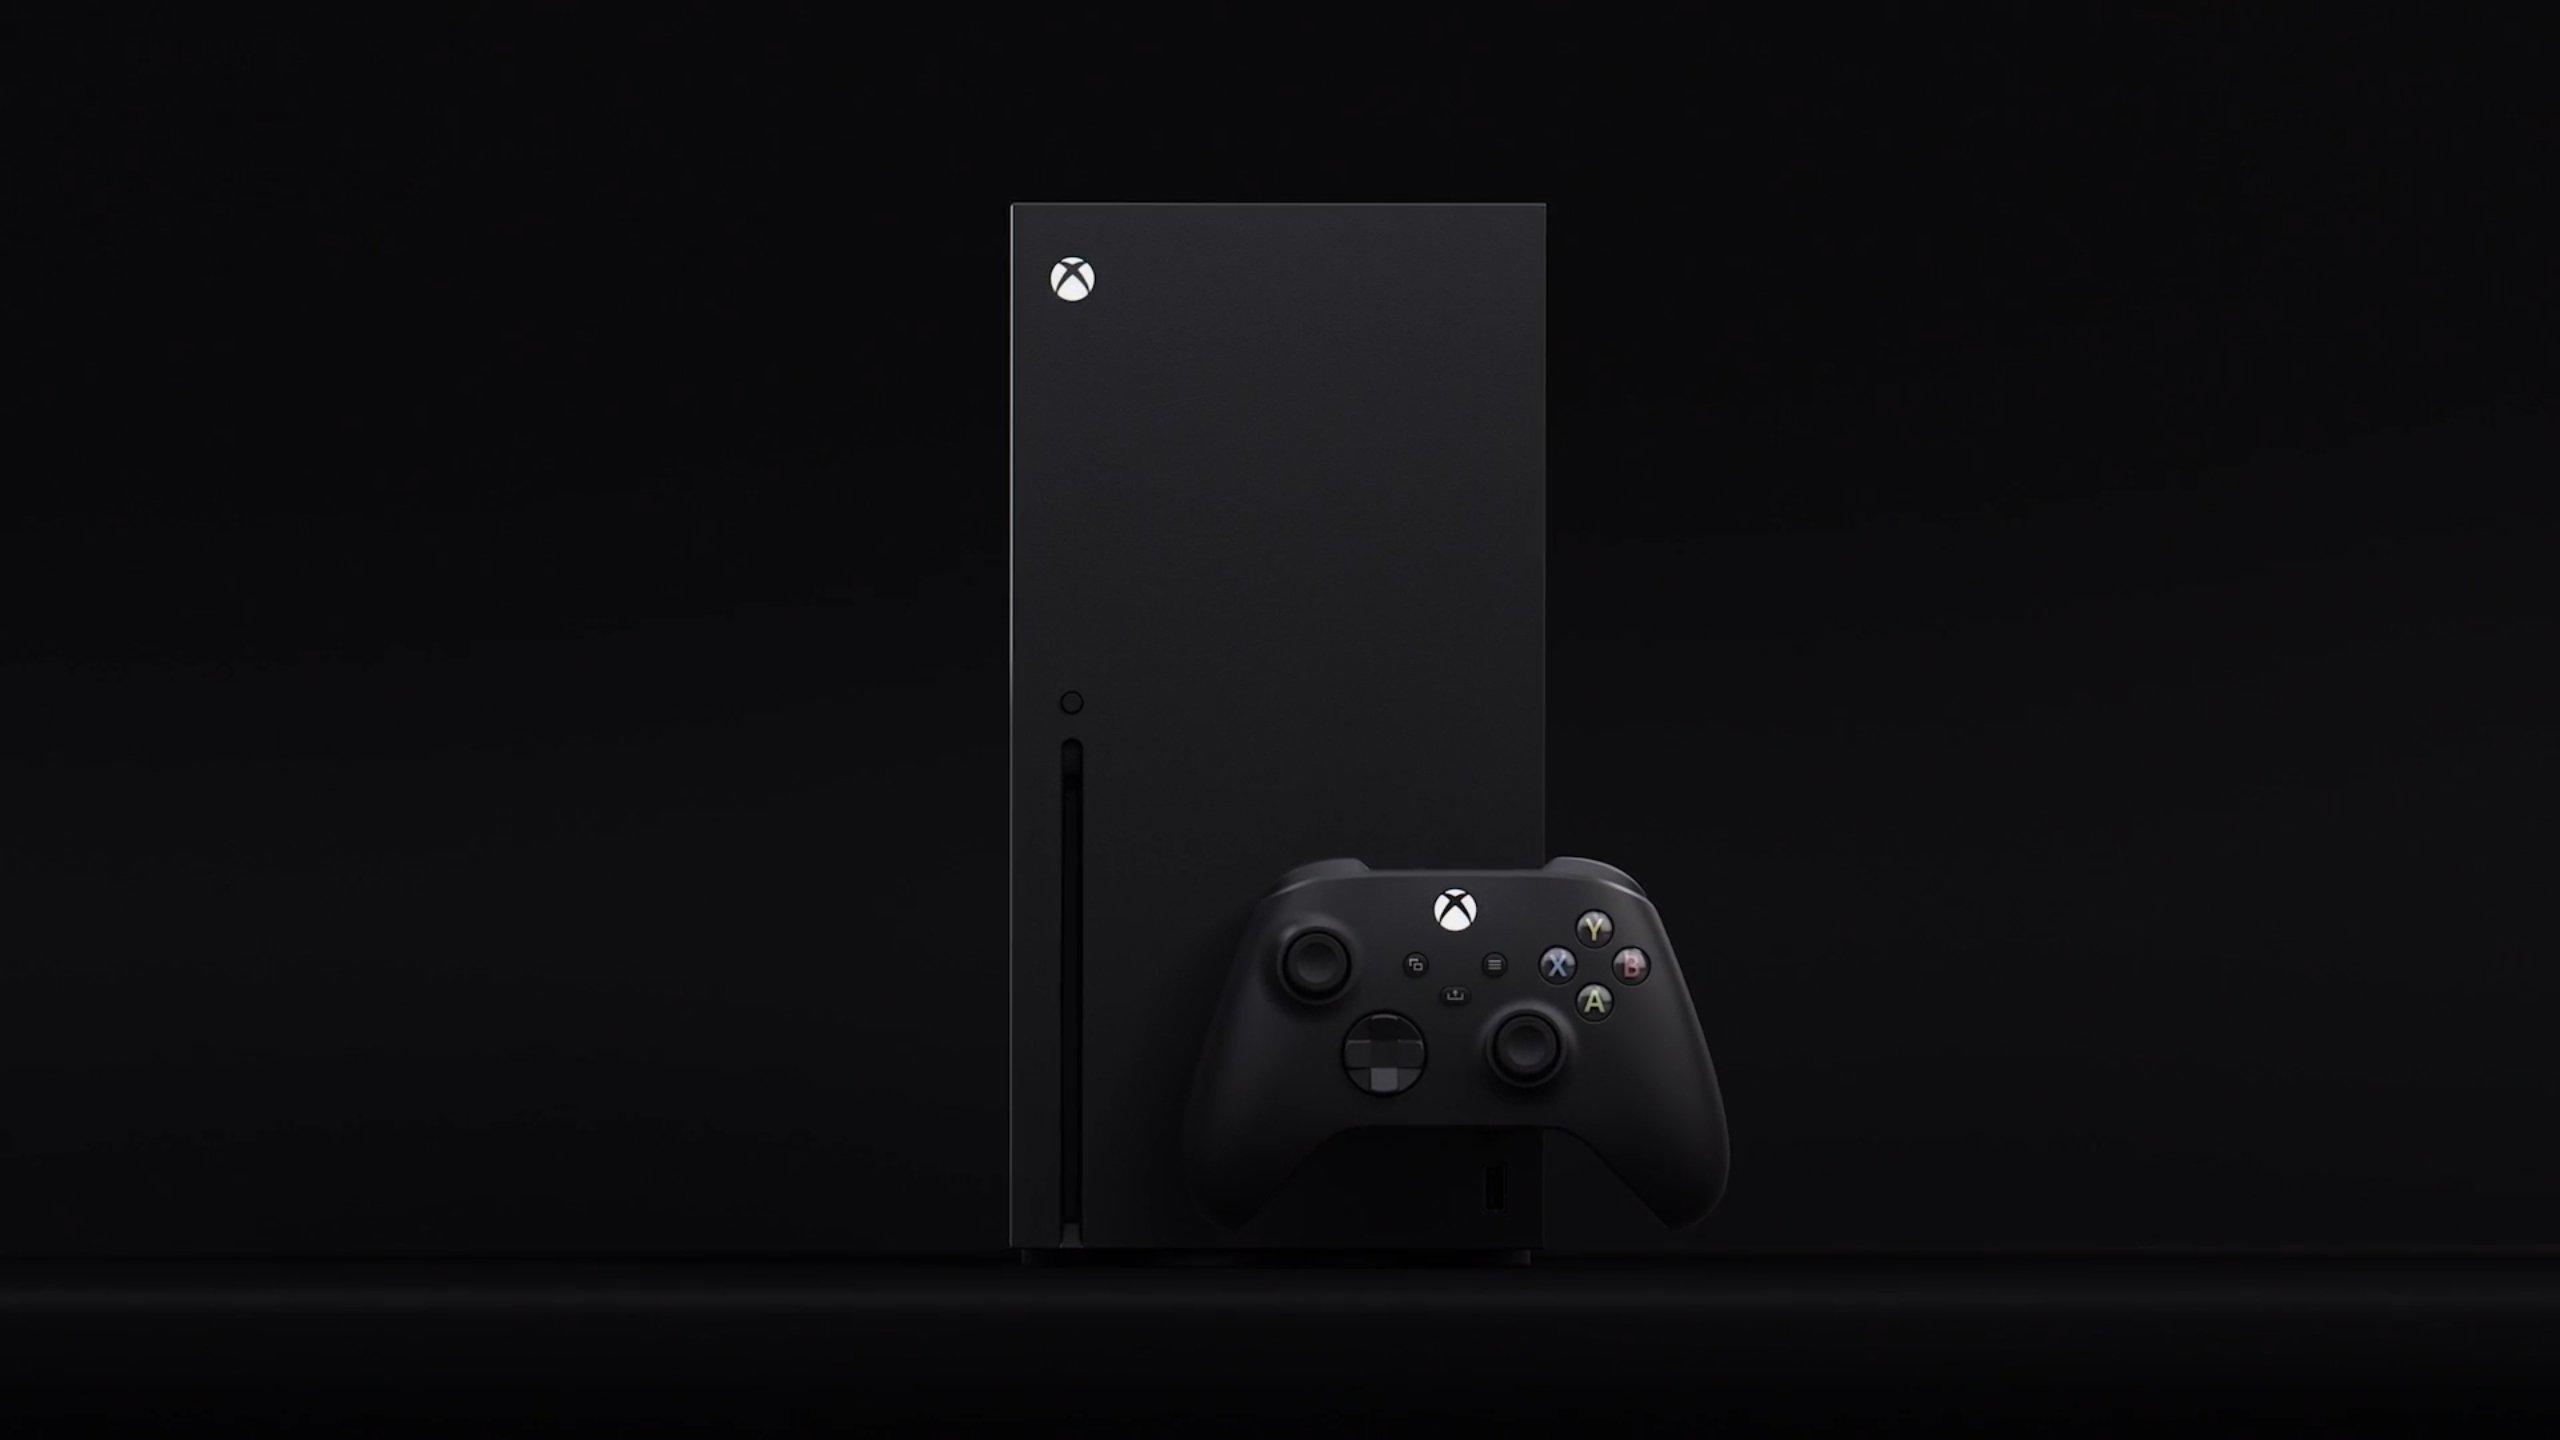 Microsoft apresenta seleção de jogos para o Xbox One - Jornal O Globo